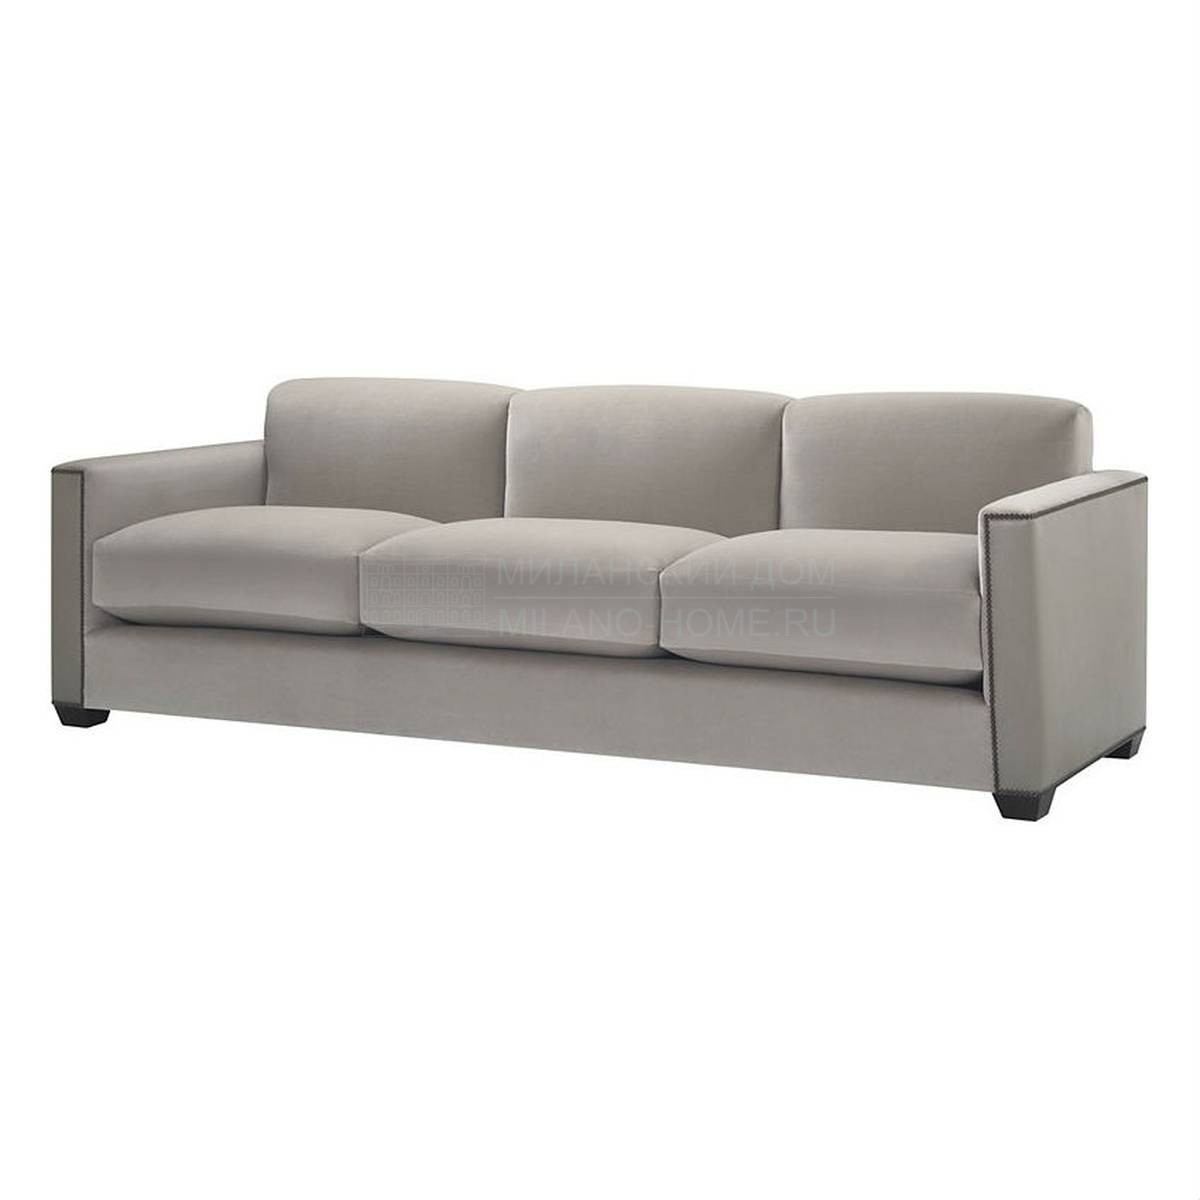 Прямой диван Manhattan sofa из США фабрики BAKER